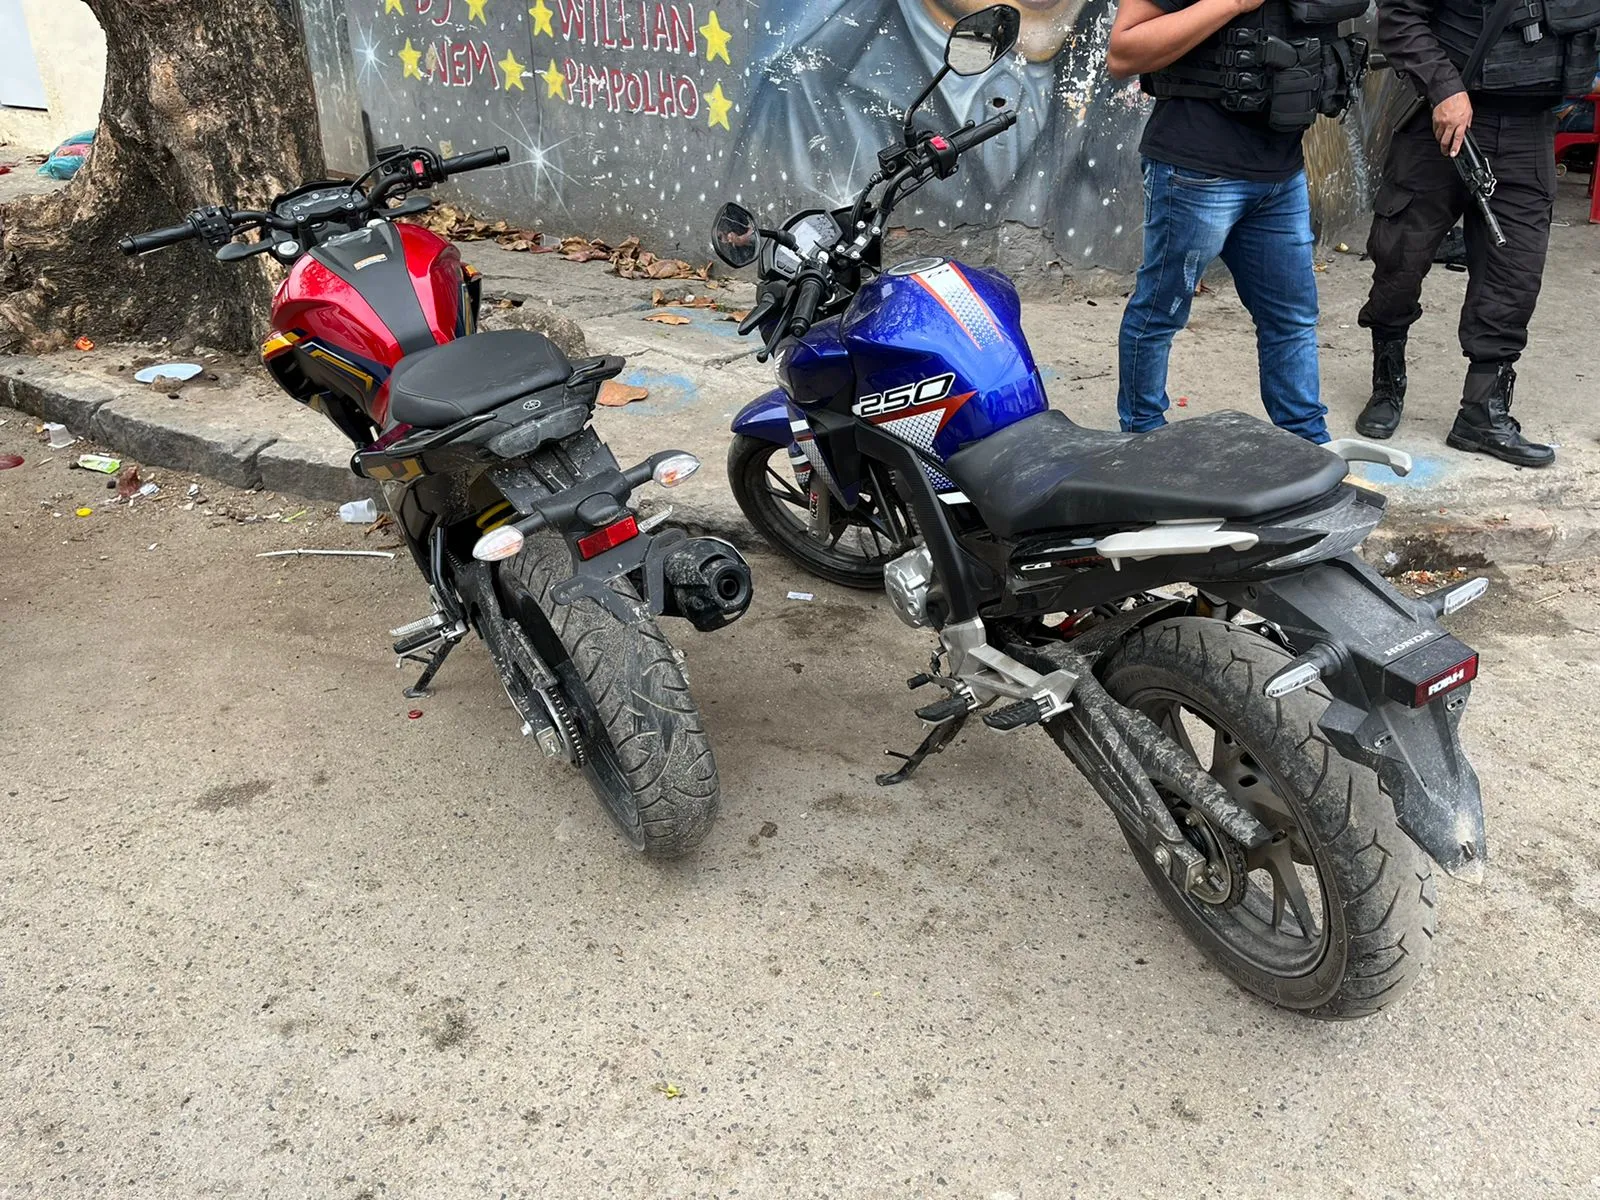 Duas motos também foram apreendidas